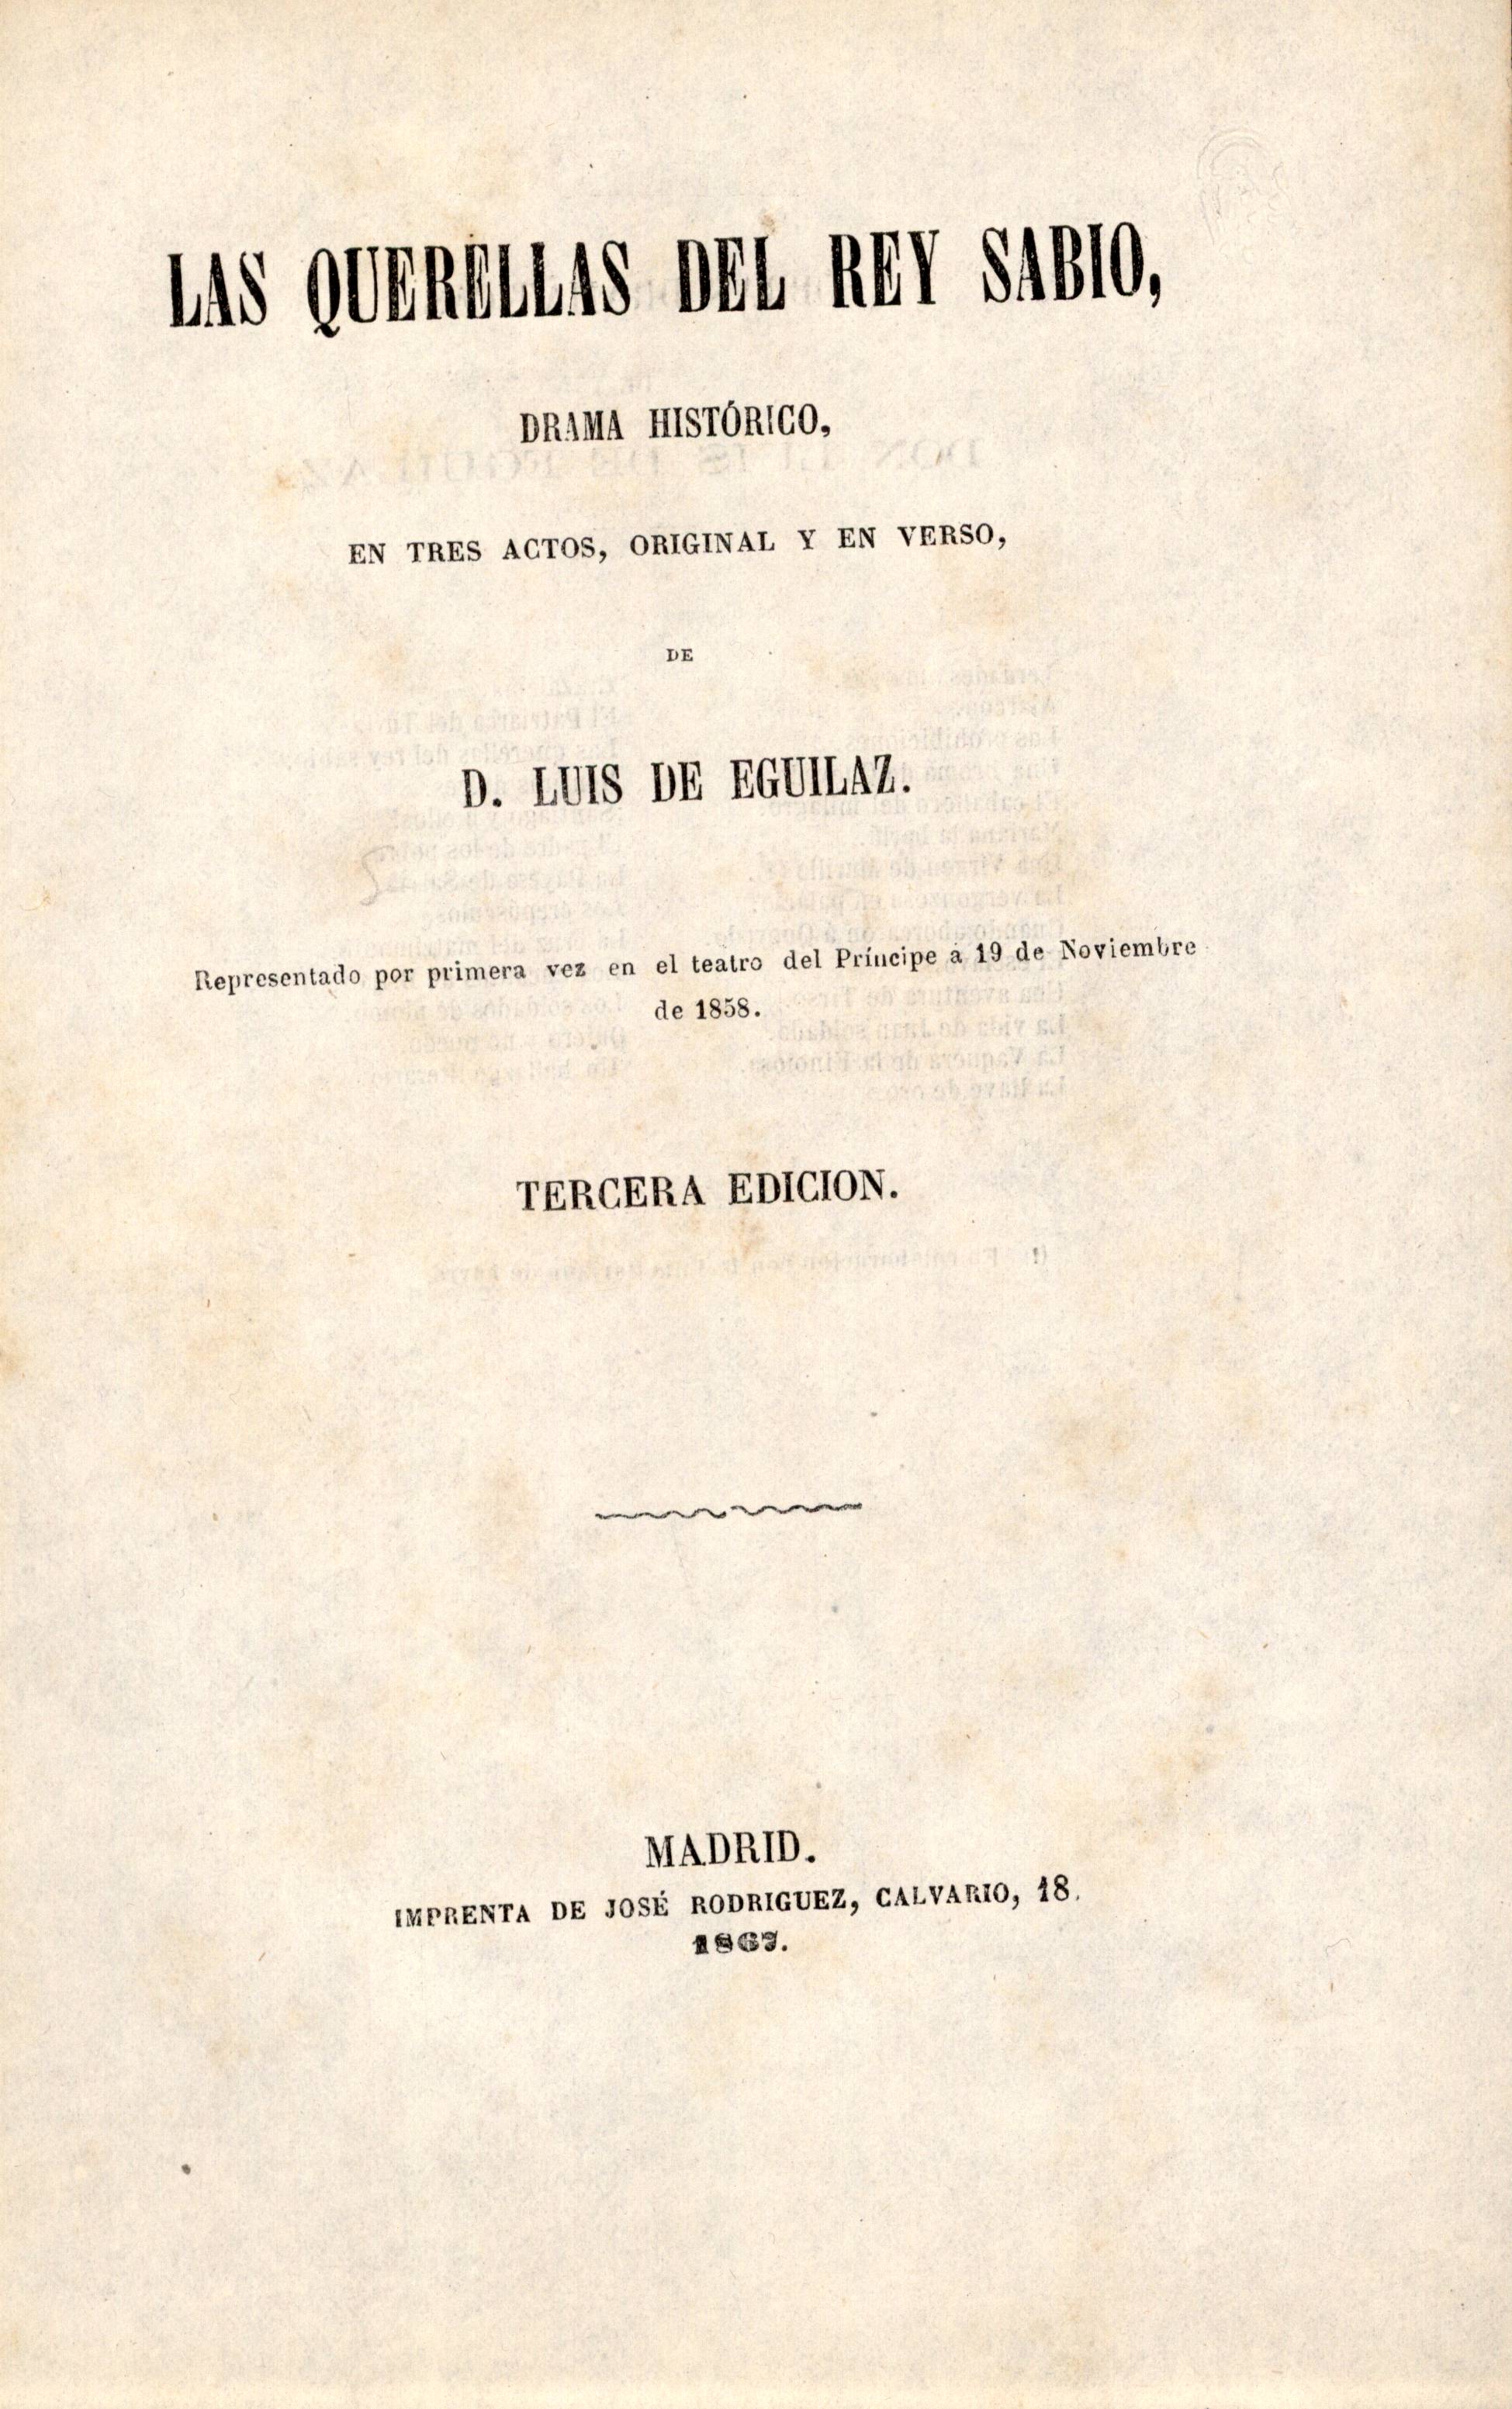 Las querellas del rey sabio, drama histórico en tres actos, original y en verso, de D. Luis de Eguilaz